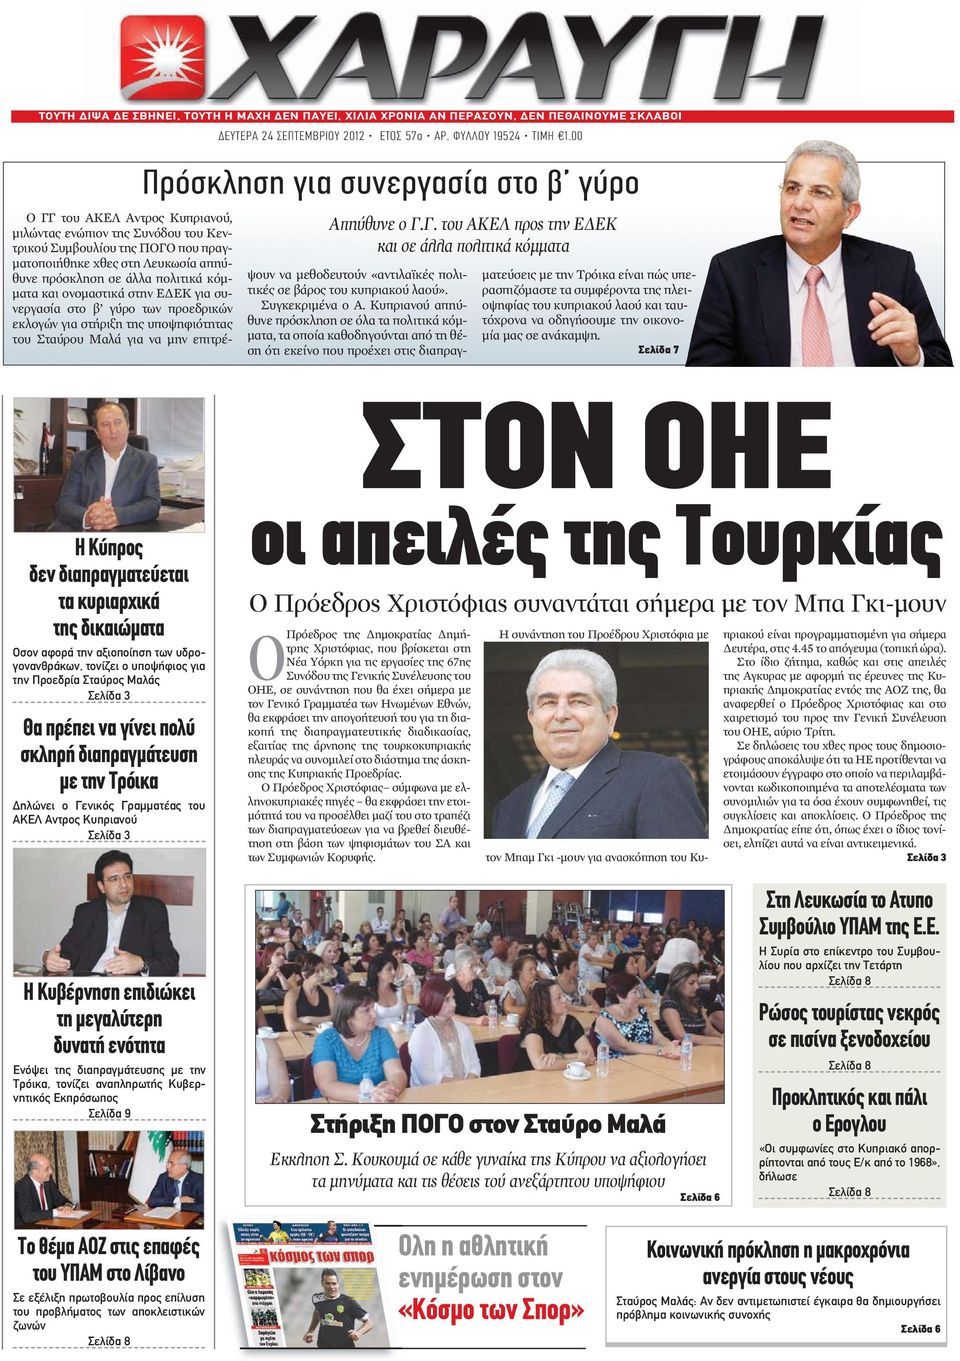 Γ. του ΑΚΕΛ προς την ΕΔΕΚ και σε άλλα πολιτικά κόμματα Ο ΓΓ του ΑΚΕΛ Αντρος Κυπριανού, μιλώντας ενώπιον της Συνόδου του Κεντρικού Συμβουλίου της ΠΟΓΟ που πραγματοποιήθηκε χθες στη Λευκωσία απηύθυνε